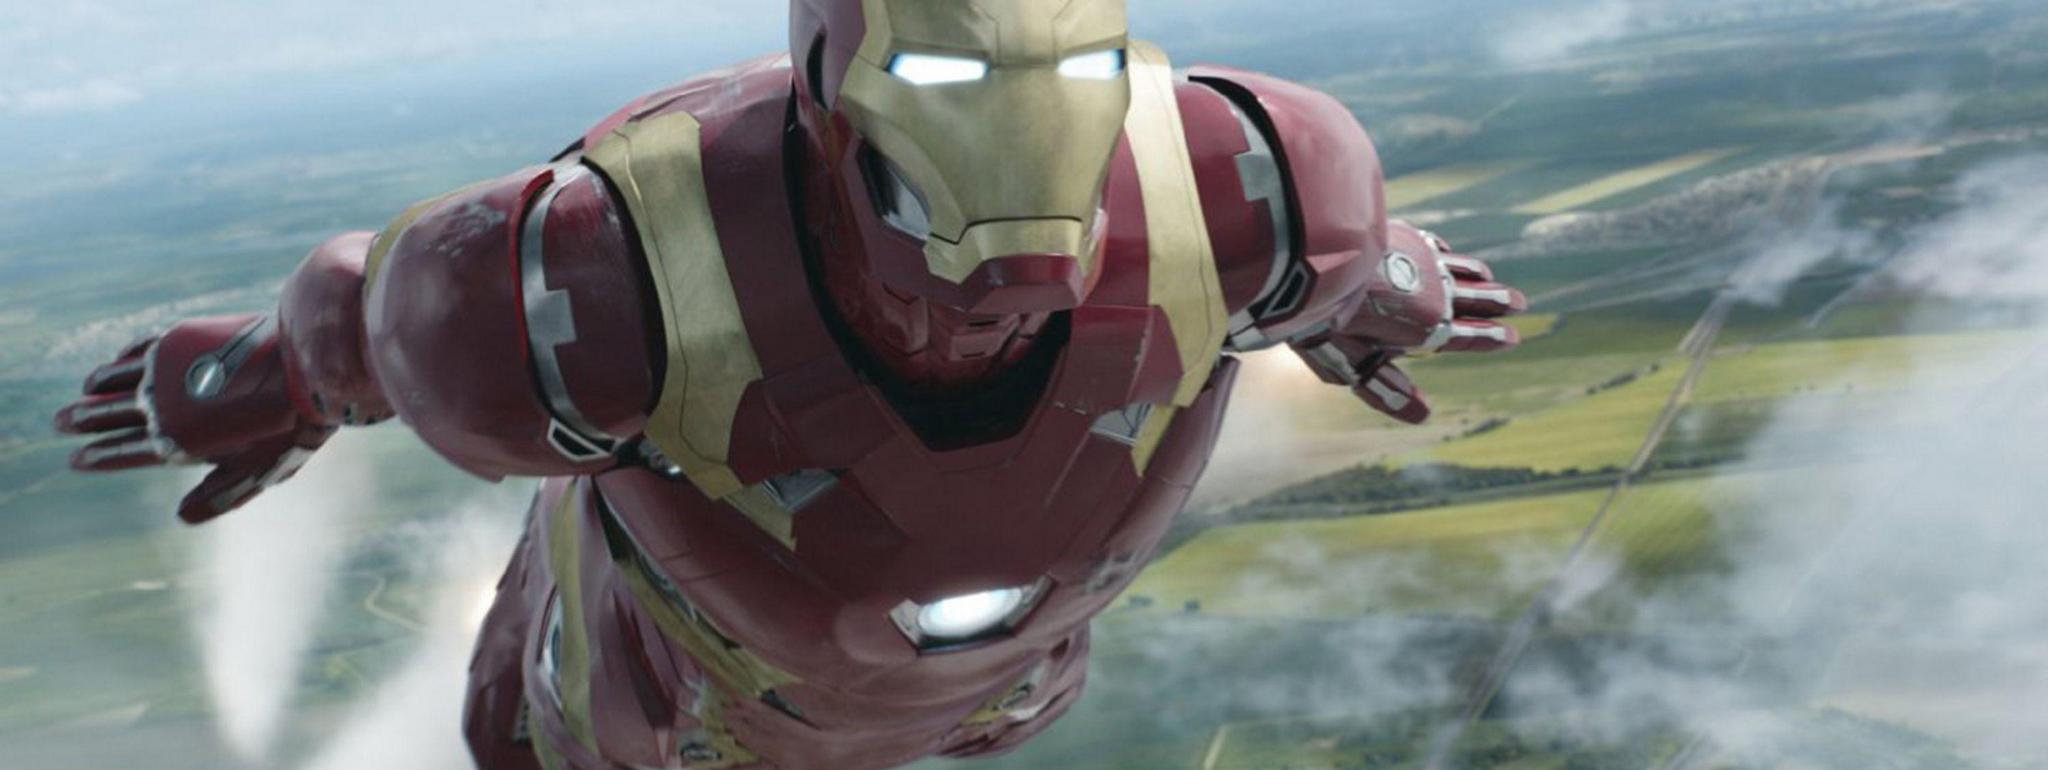 Các nhà khoa học đang cố chế tạo robot có thể bay như Iron Man